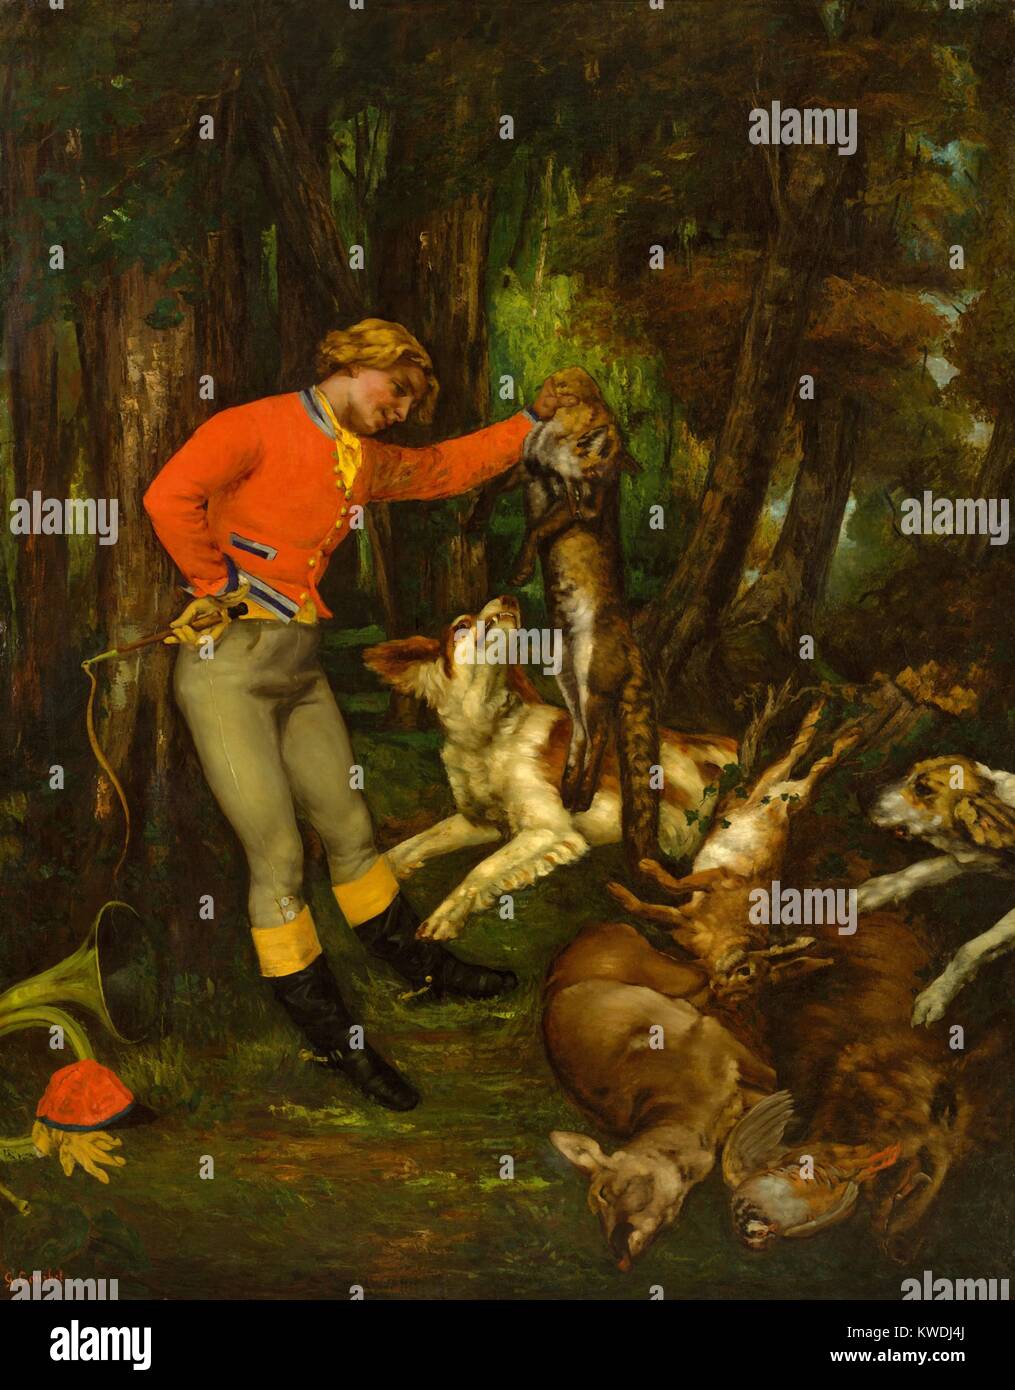 Nach der Jagd, von Gustave Courbet, 1859, Französische Malerei, Öl auf Leinwand. Die Jagd Master steht über ein Sortiment von toten Spiel, einschließlich einem Wildschwein, Rebhuhn, ein Reh, ein Hase. Courbet gewidmet, etwa 80 Bilder zum beliebten Thema der Jagd (BSLOC 2017 9 118) Stockfoto